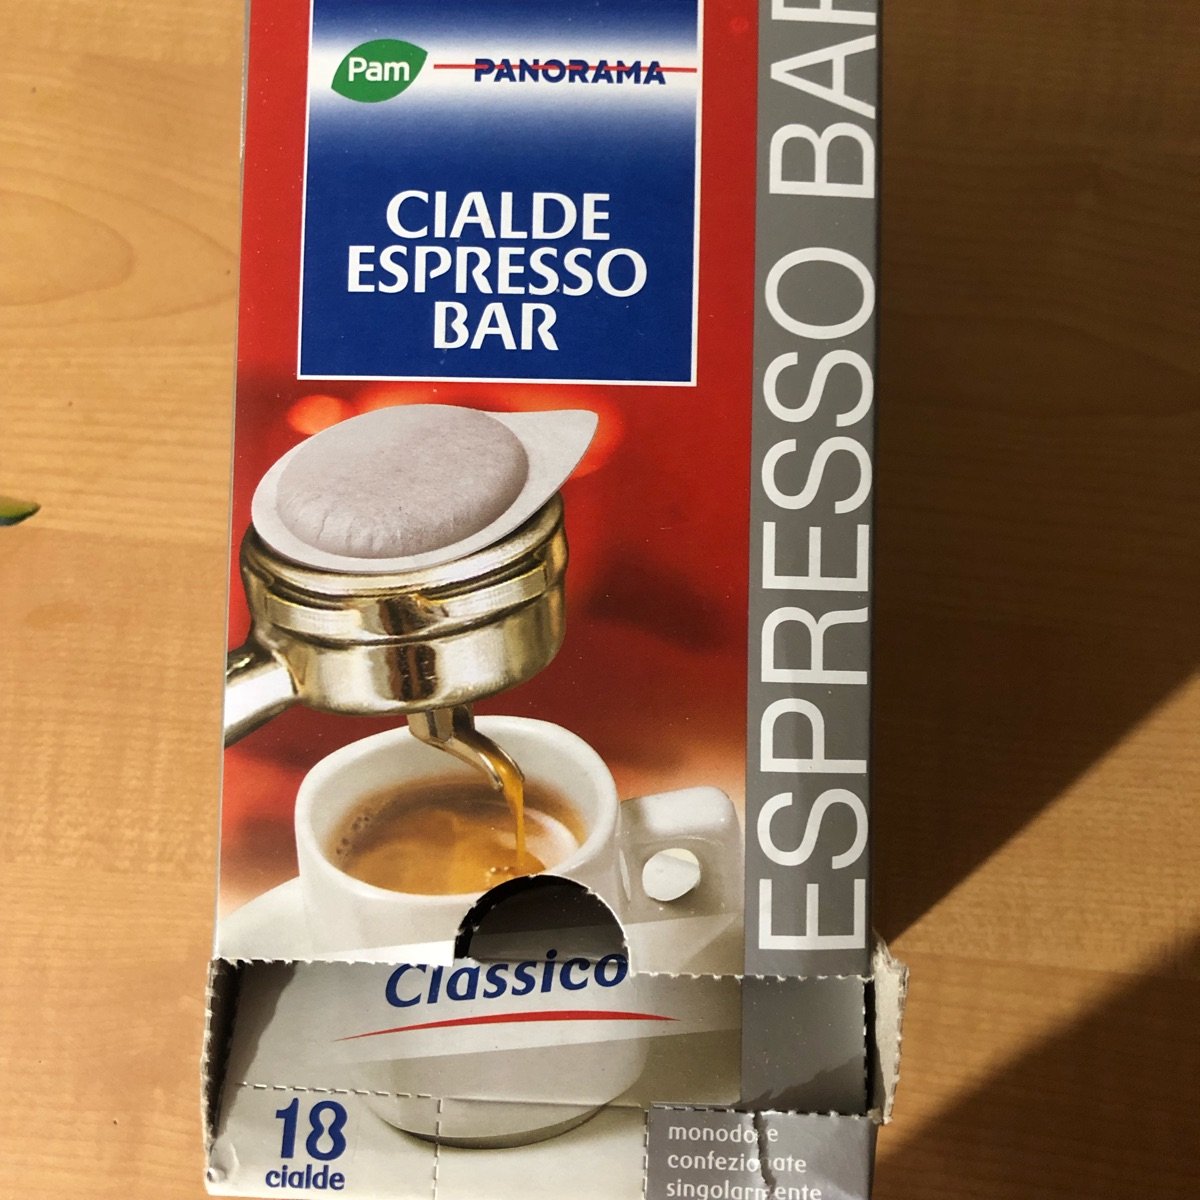 Pam & PANORAMA cialde espresso bar Reviews